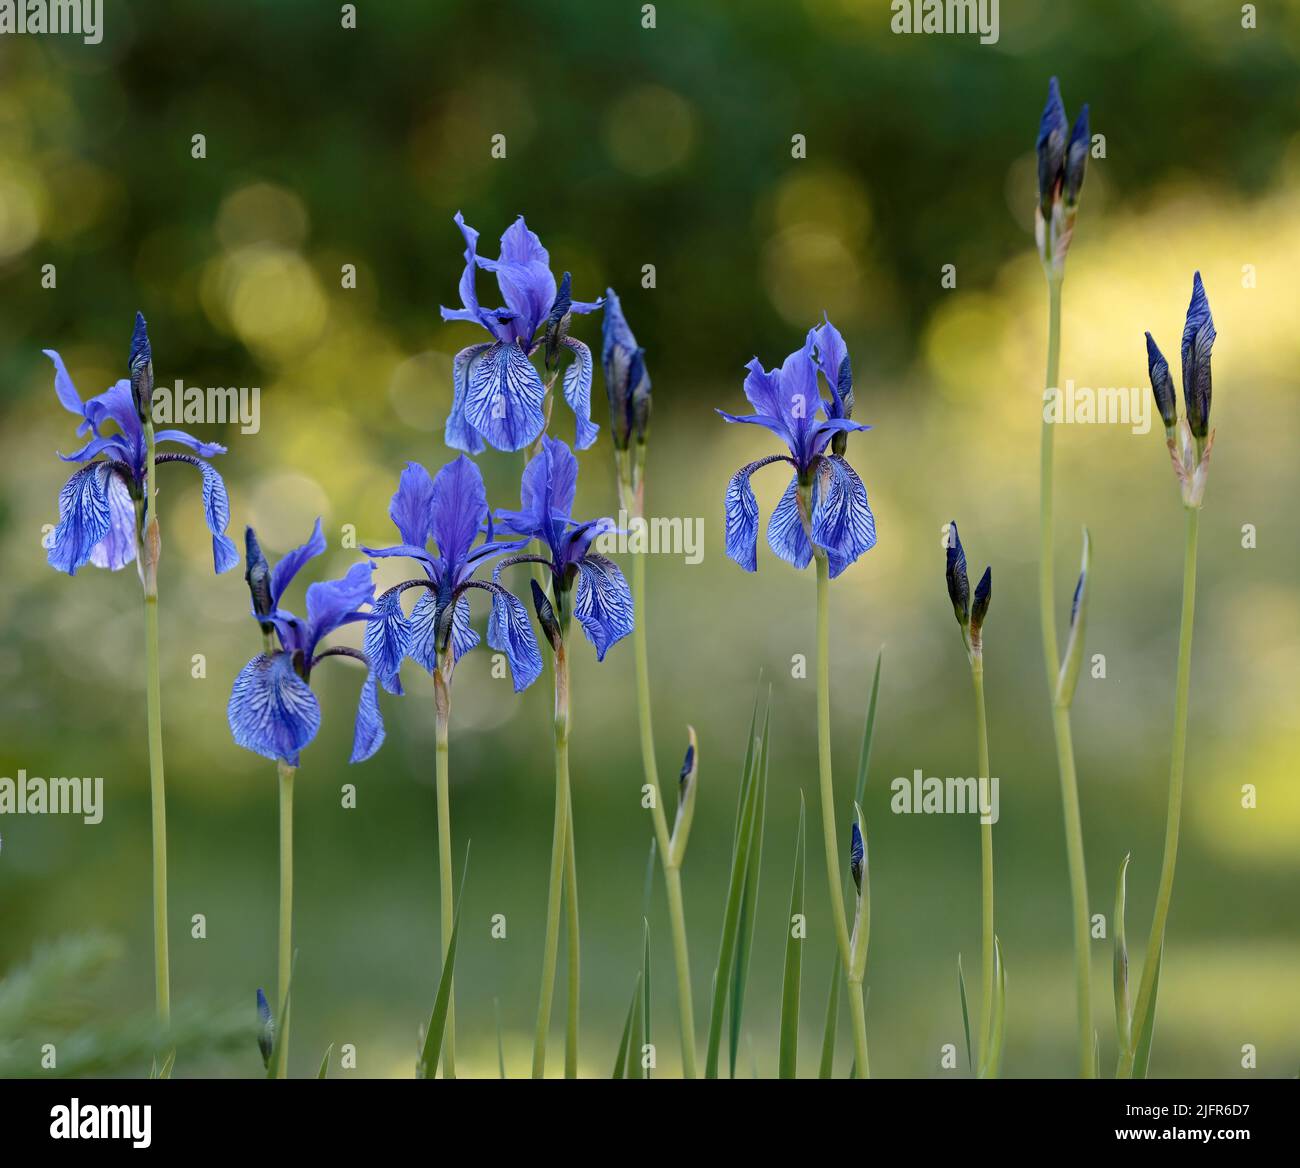 Iris sibérien fleurit avec de belles fleurs bleues dans la lumière du soir Banque D'Images